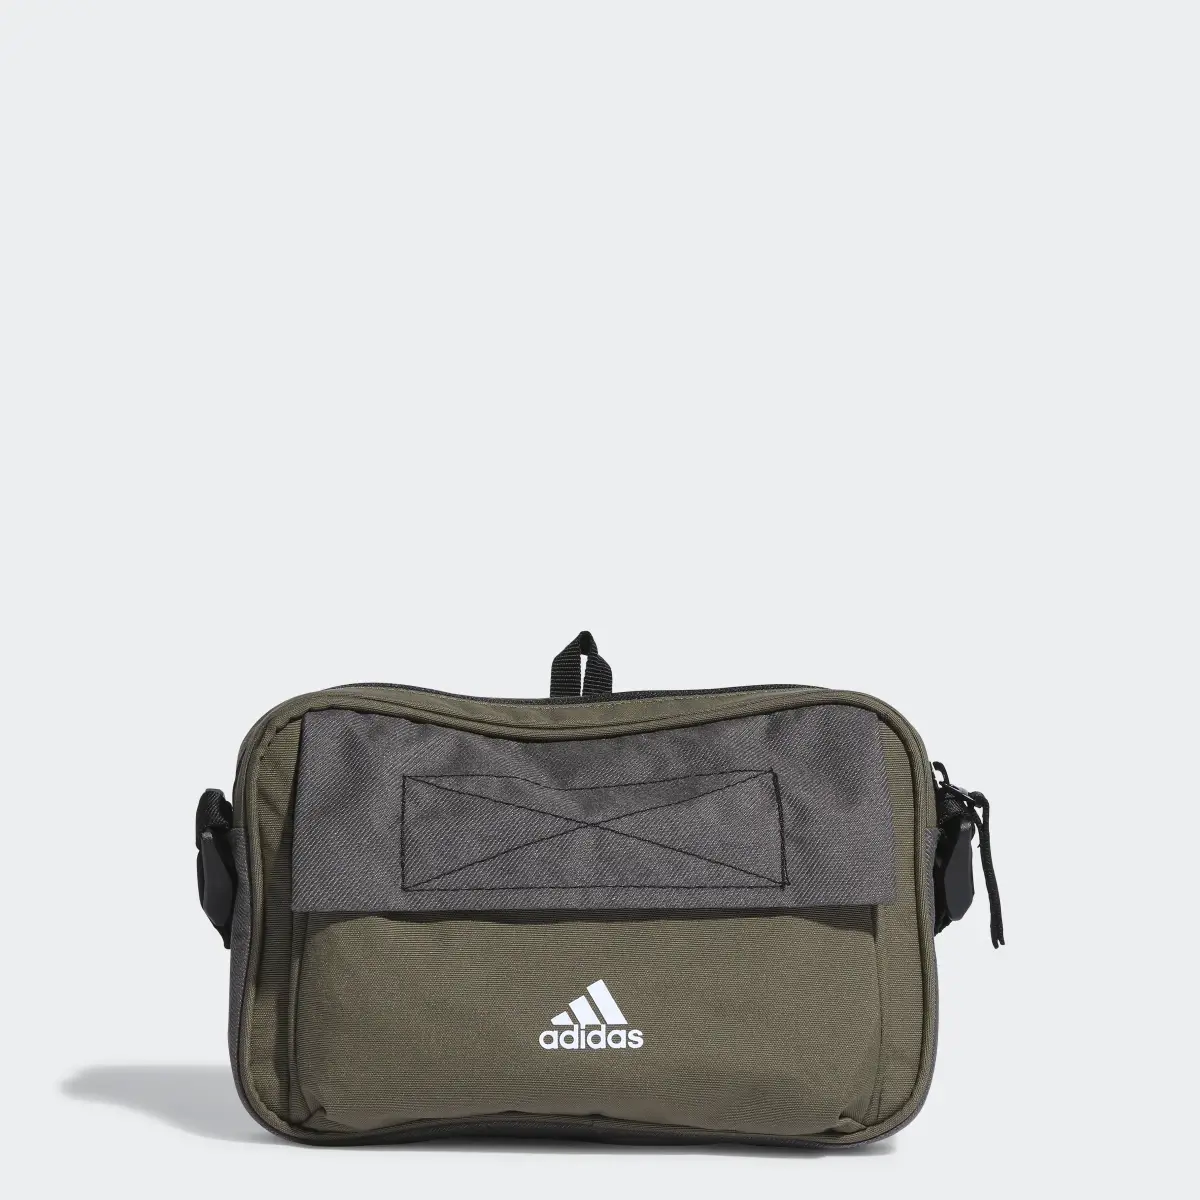 Adidas City Xplorer Organizer Bag. 1